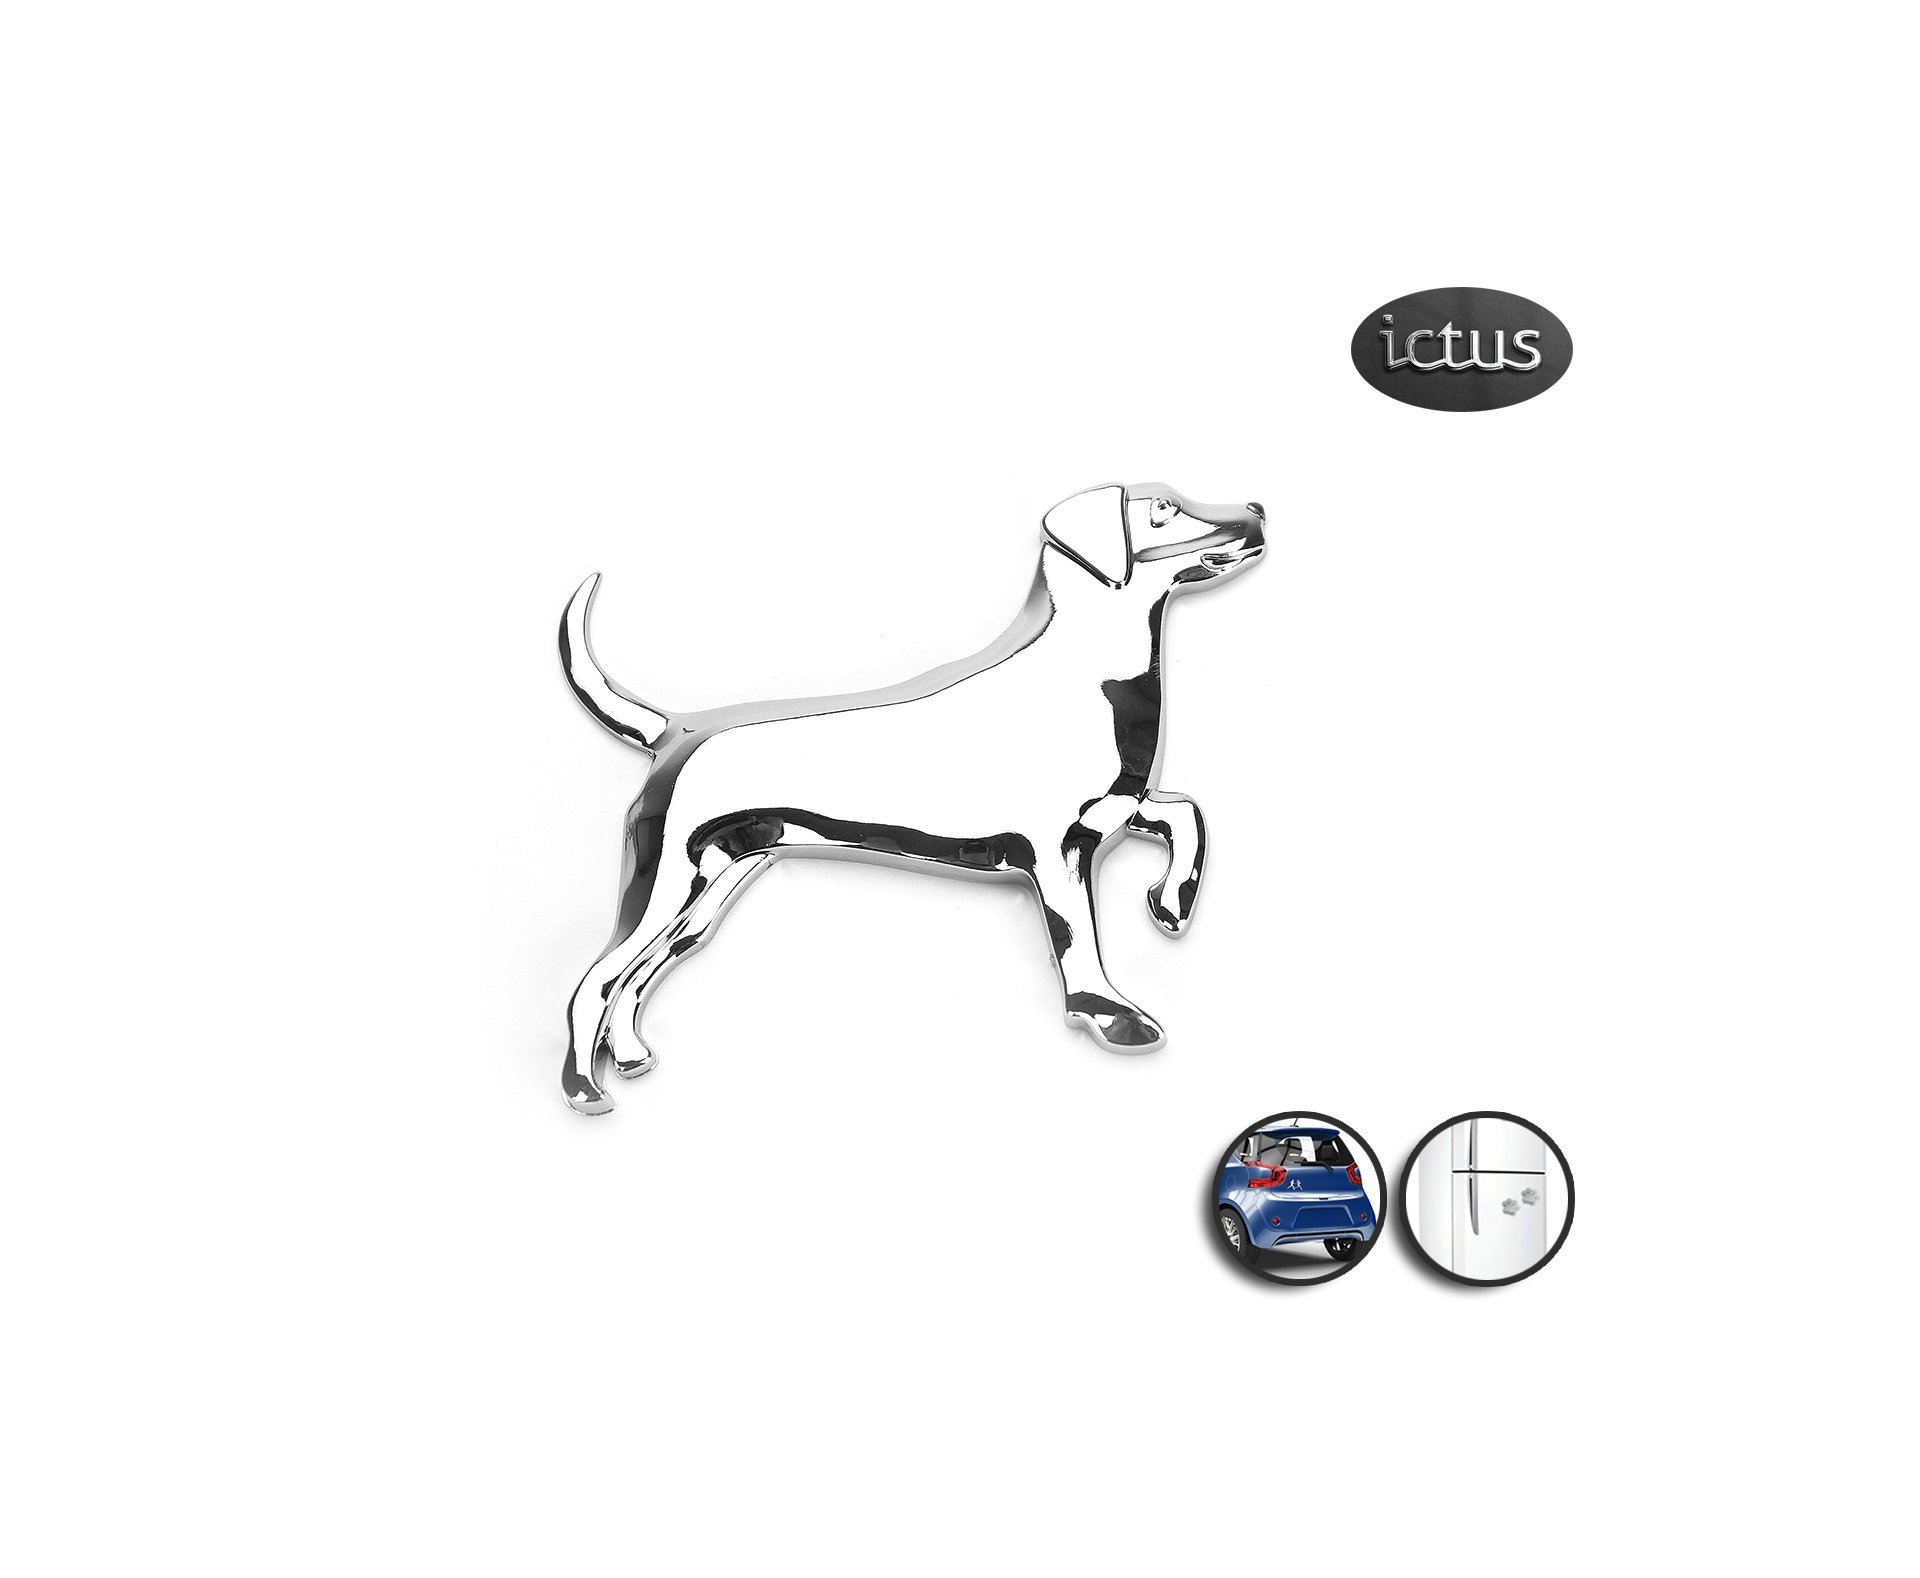 Emblema Labrador - Ictus